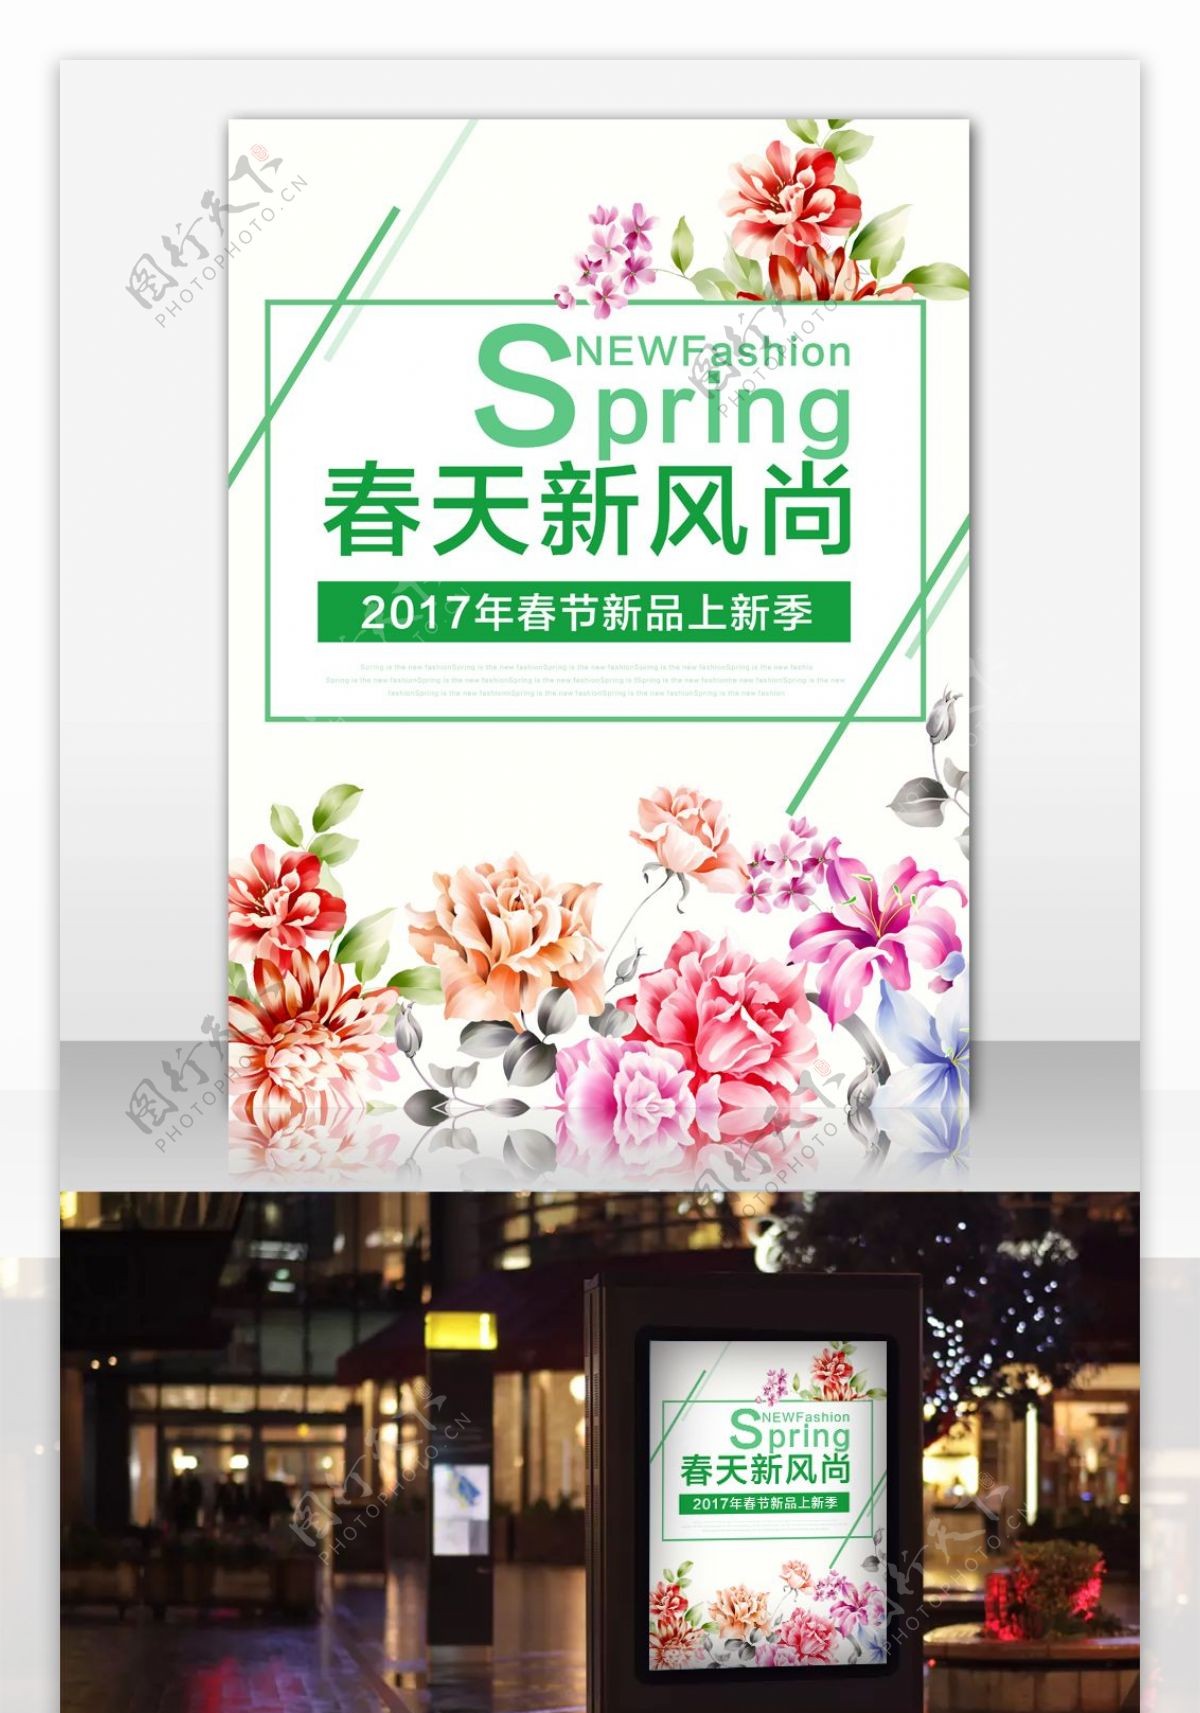 2017春夏新风尚新品上新海报